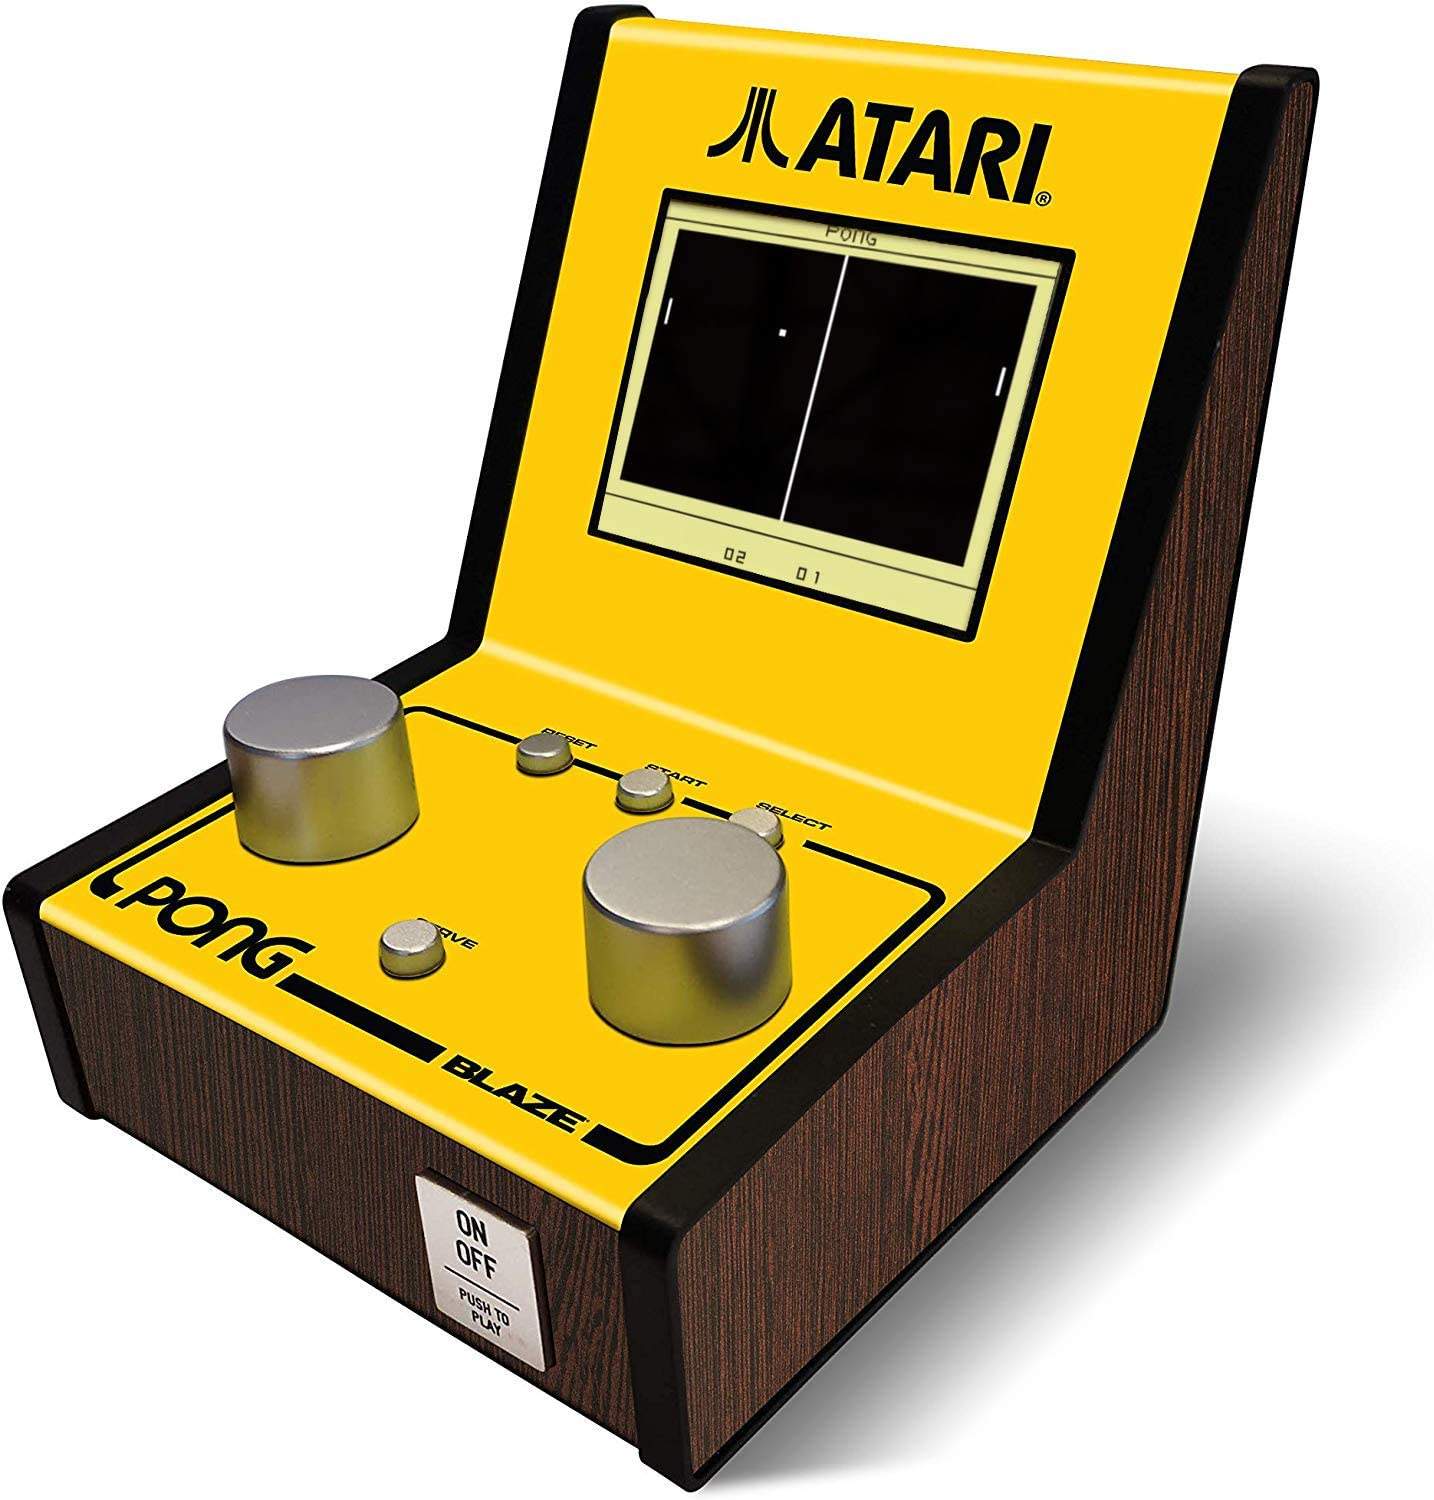 L'Atari Pong Mini Arcade